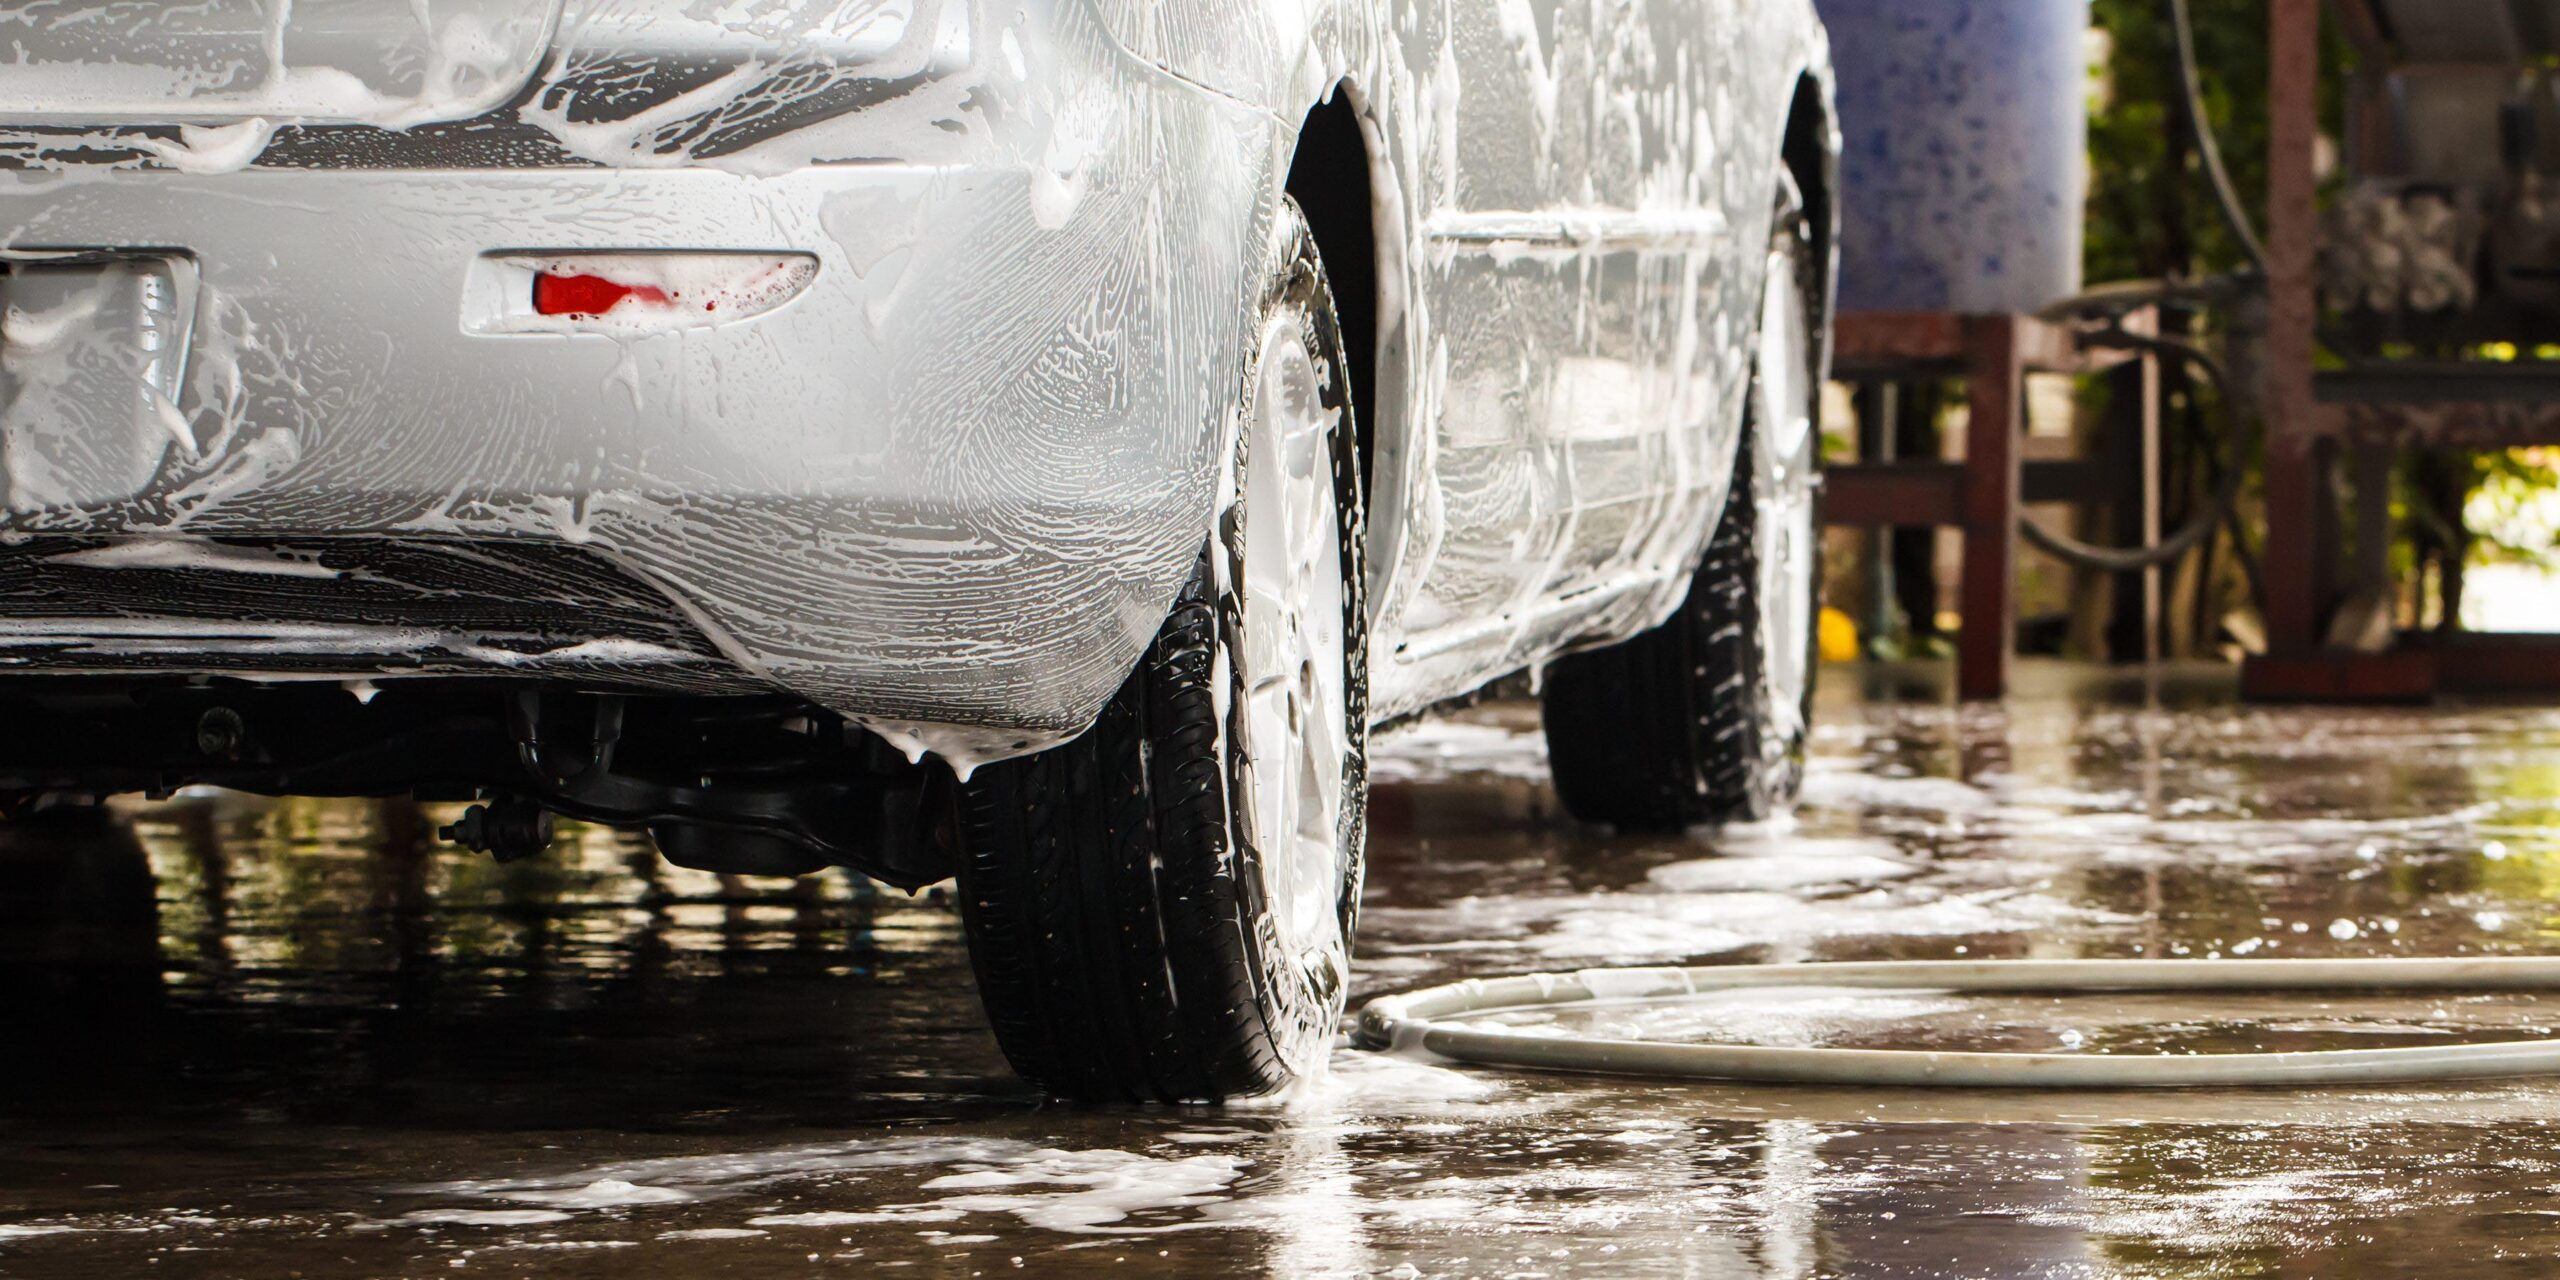 Startup mexicana logra reducir 99.7% consumo de agua para lavado de autos | El Imparcial de Oaxaca